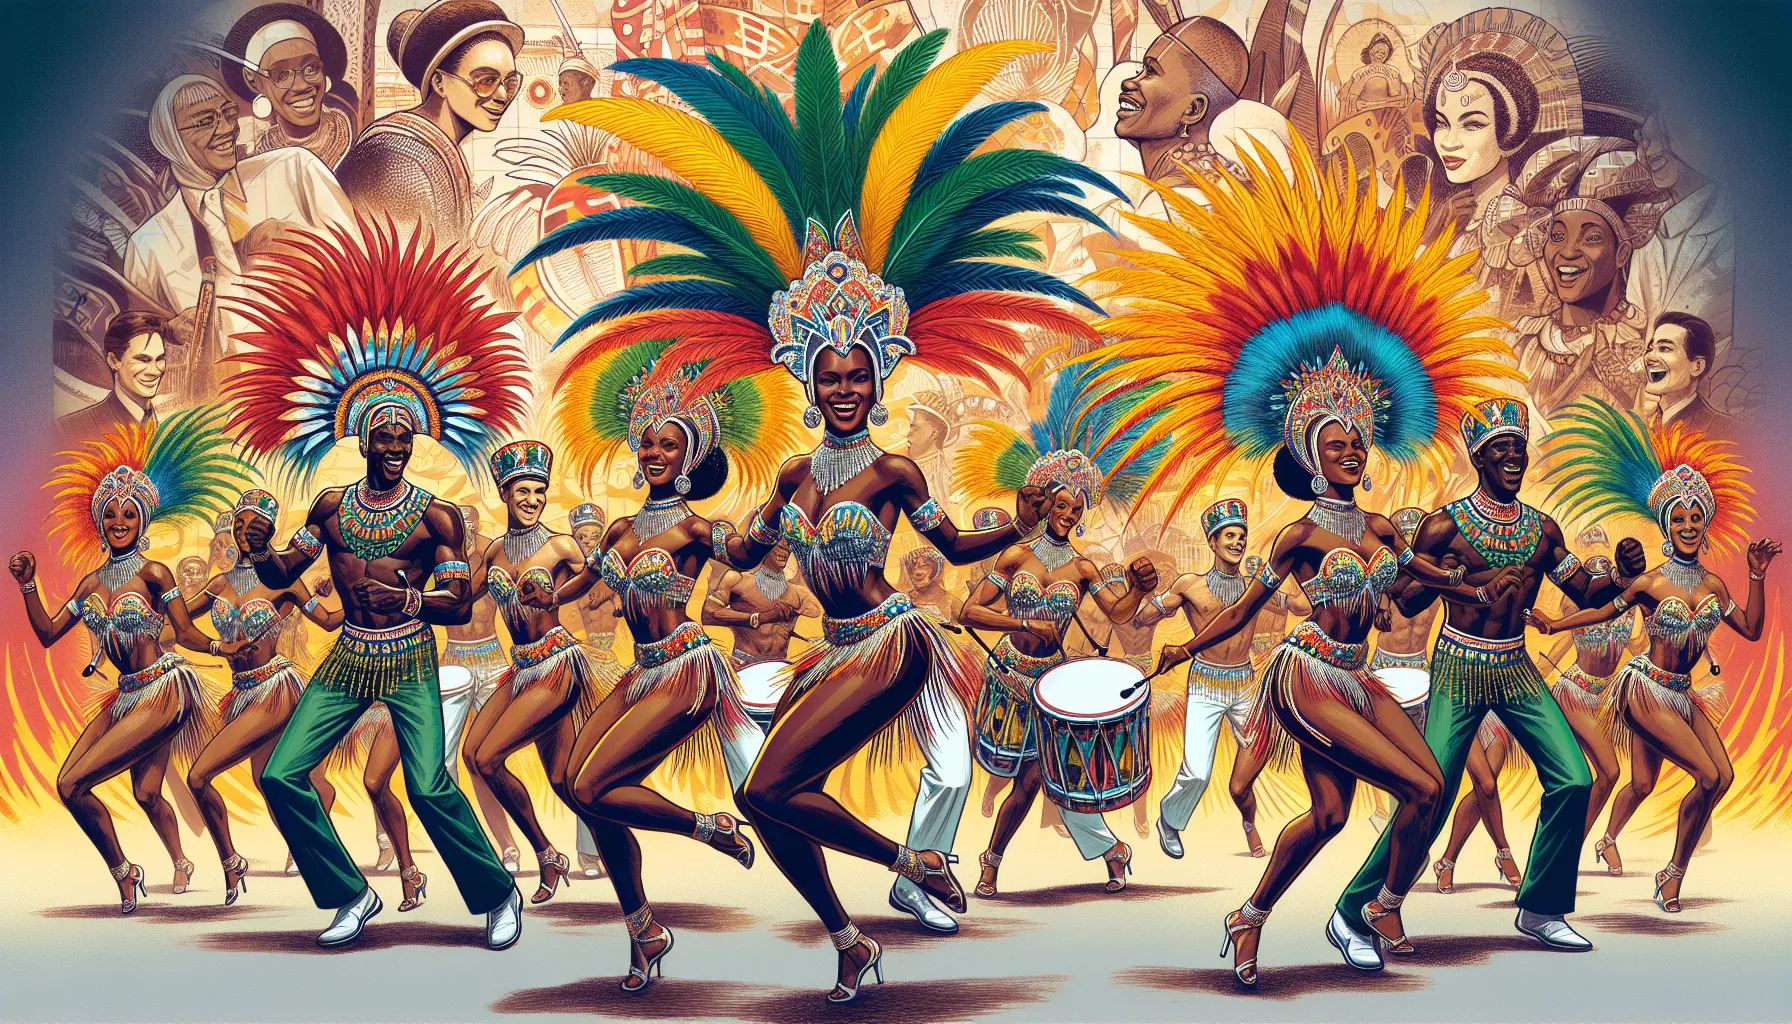 A cultura brasileira é uma mistura de influências de diferentes povos e culturas, incluindo a africana. As contribuições africanas para a cultura brasileira são significativas e podem ser vistas em diversos aspectos, como na música, dança, culinária, religião e nas tradições populares.A música é um dos principais legados africanos no Brasil. Os escravos africanos trouxeram consigo seus ritmos